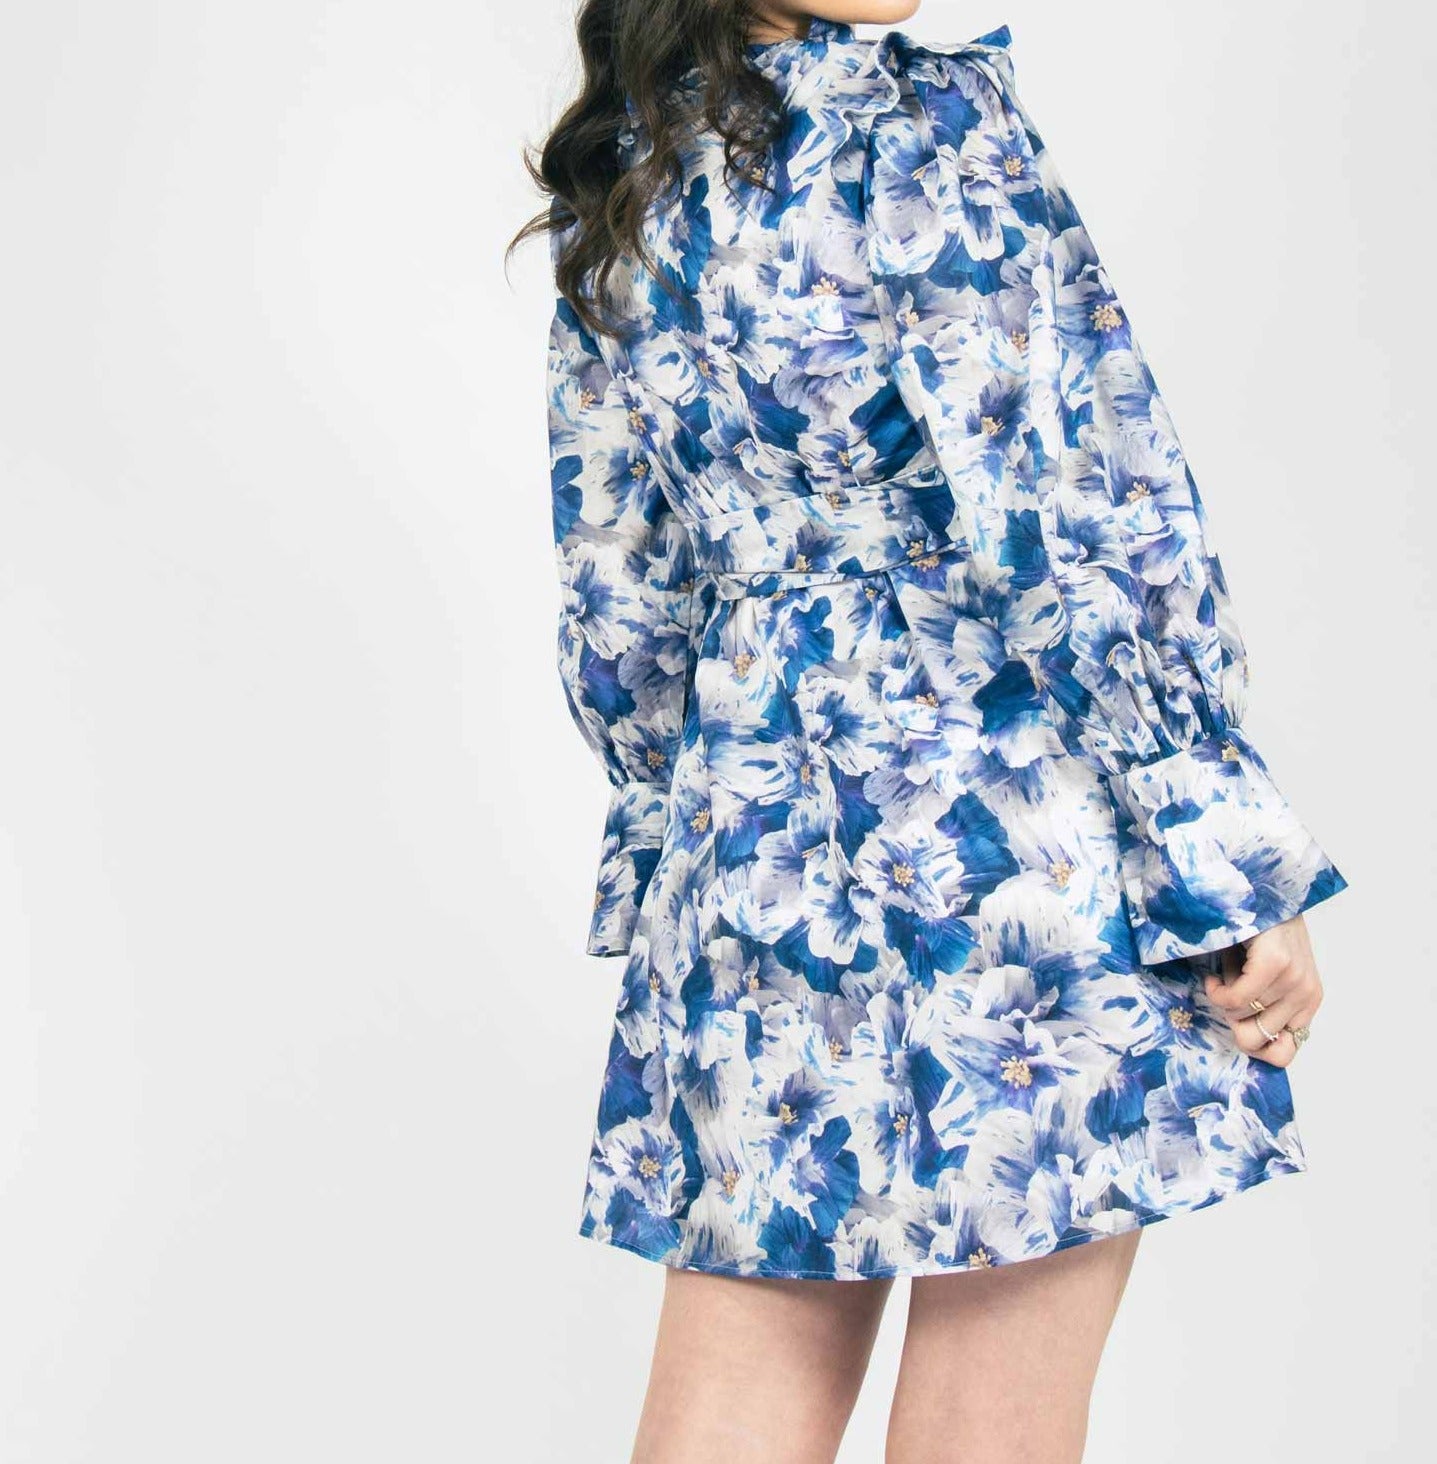 girly mini dress with matching belt, summer fashion